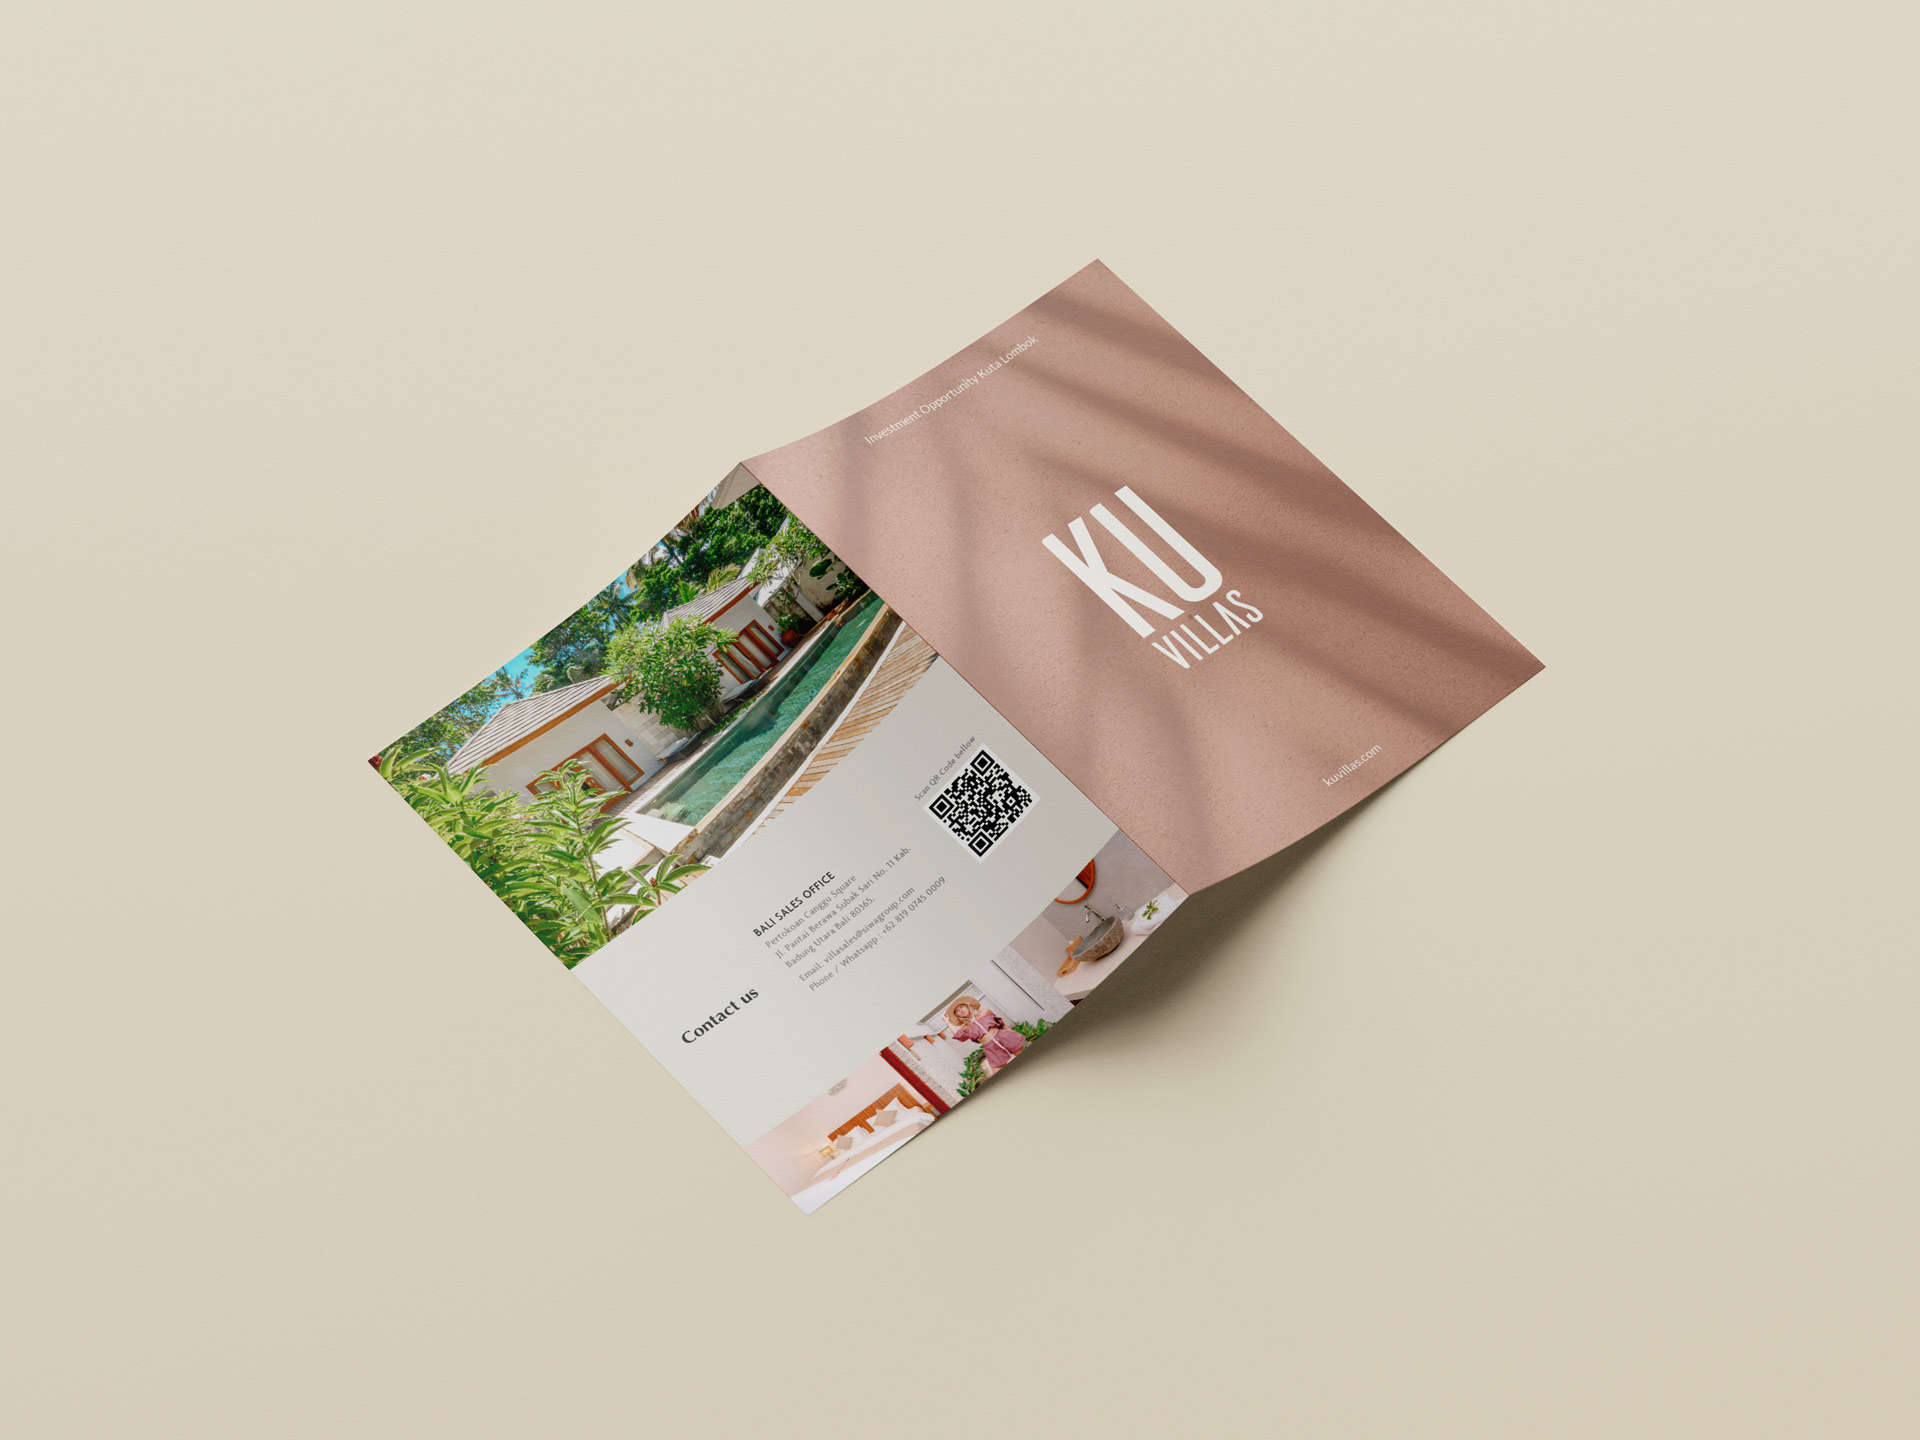 The Bukit Studio | Ku Villas Lombok A4 folded flyer